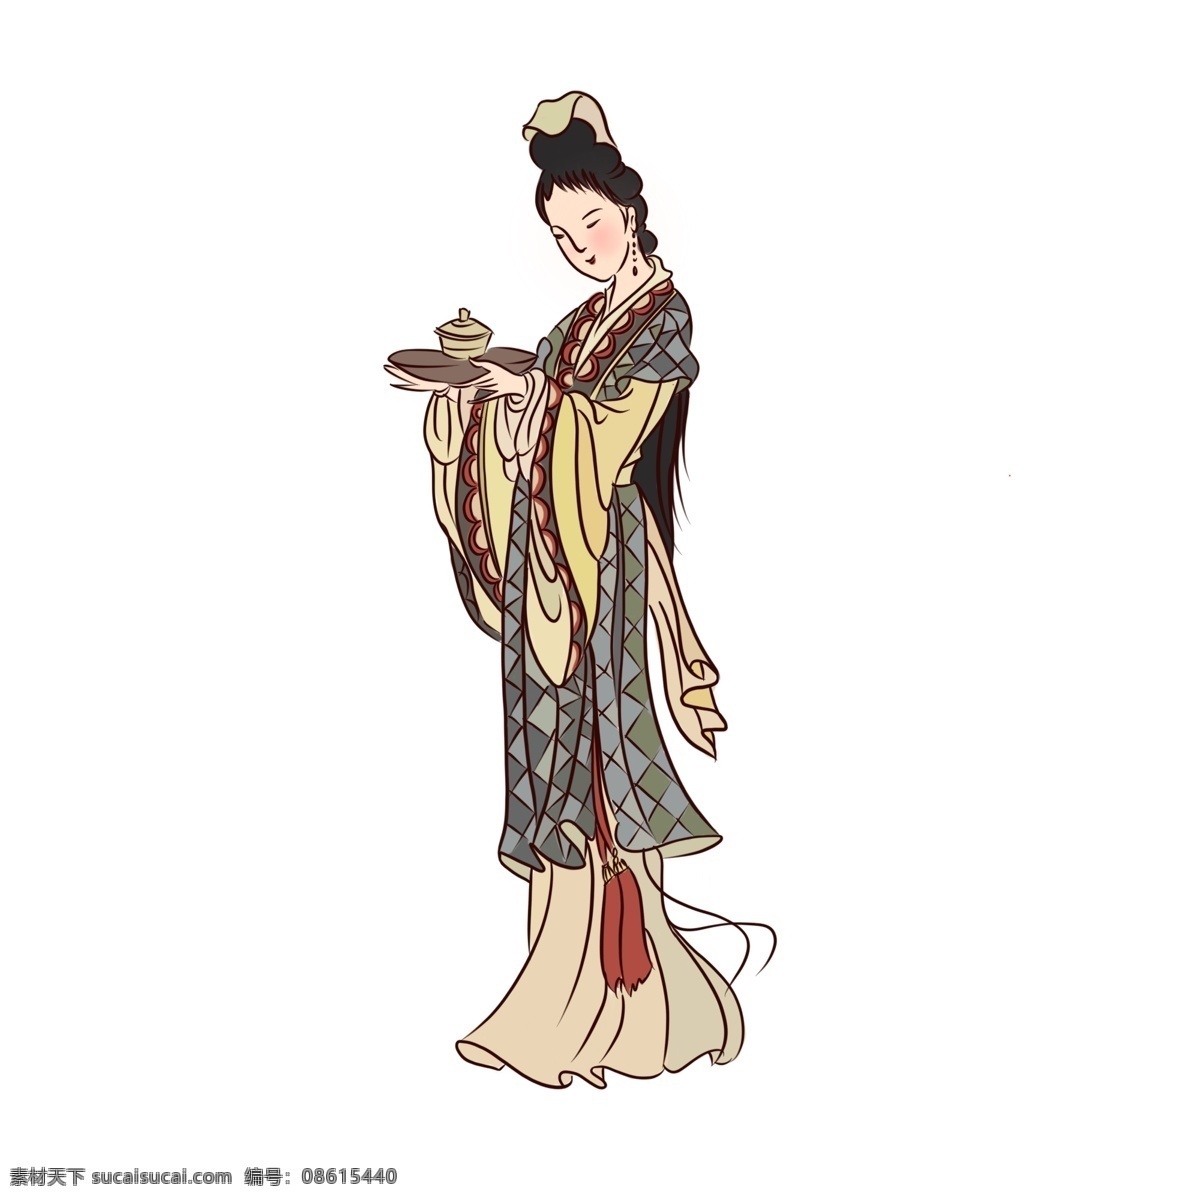 手绘 中国 风 白描 风格 古代 人物 美女 图 手绘人物 中国风 古典人物 古代美人 白描风格人物